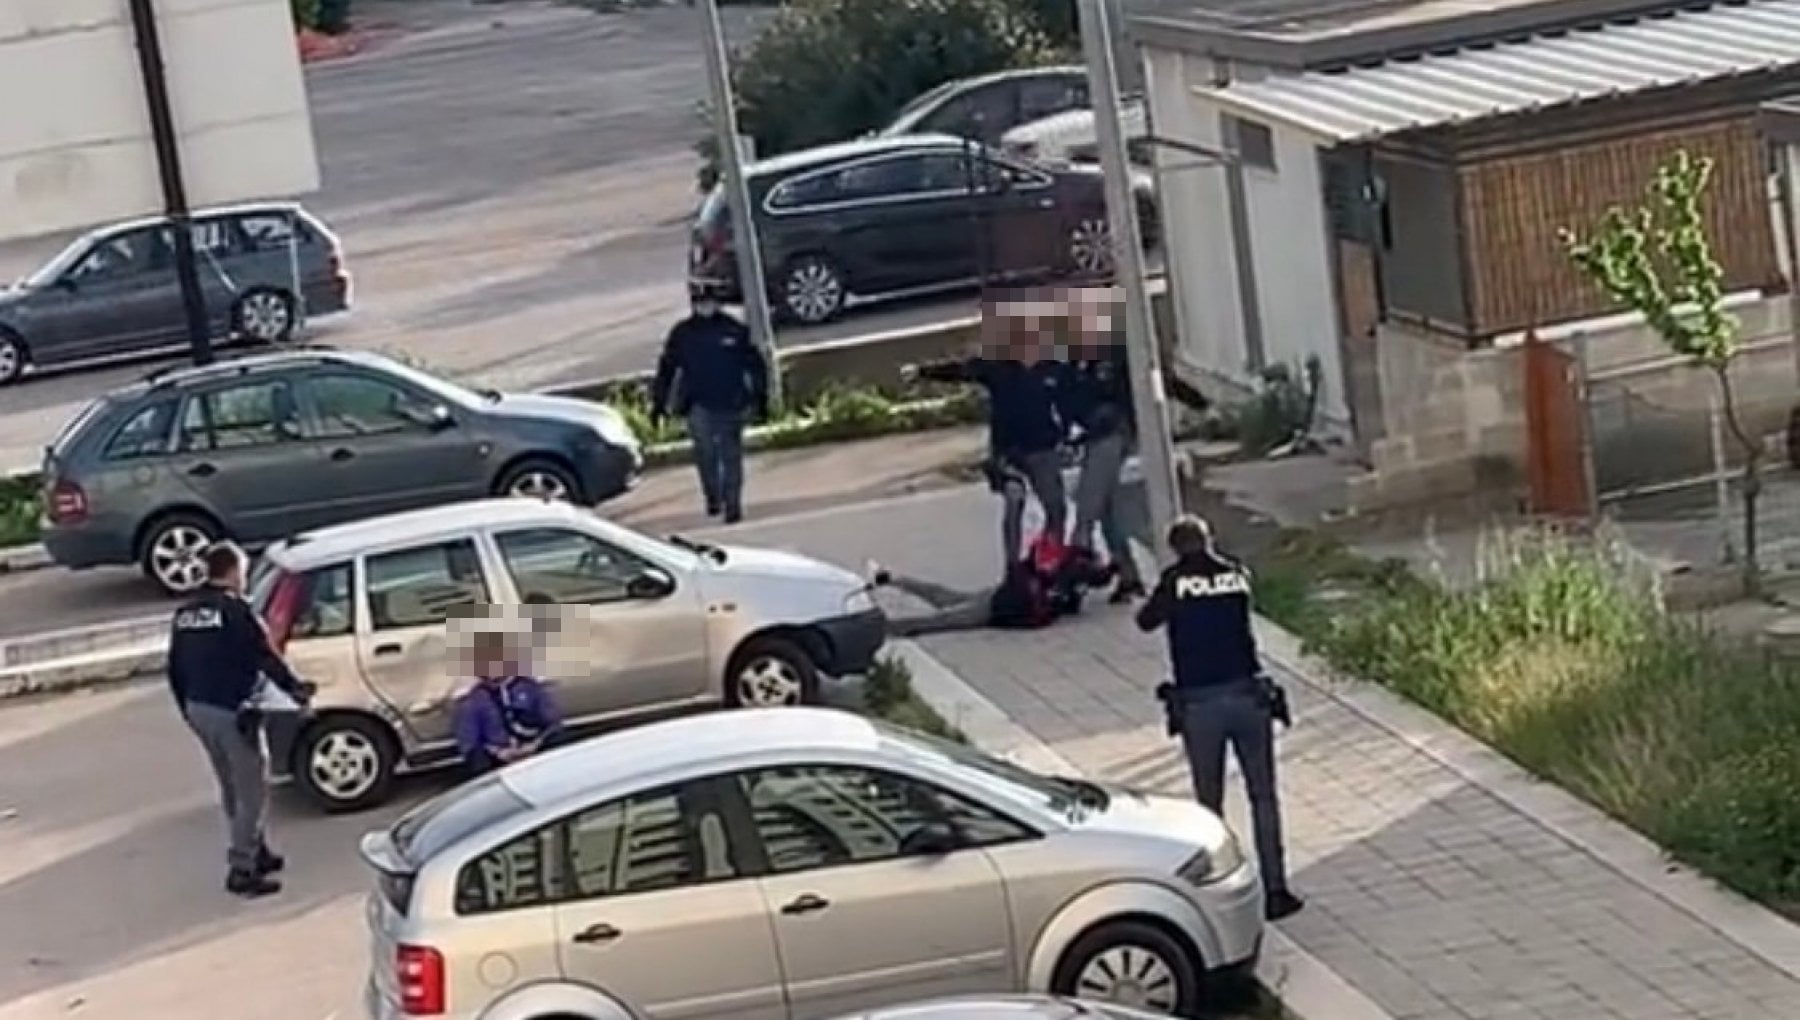 Foggia, un poliziotto prende a calci in faccia un giovane immobilizzato a terra: il video virale su Tik Tok